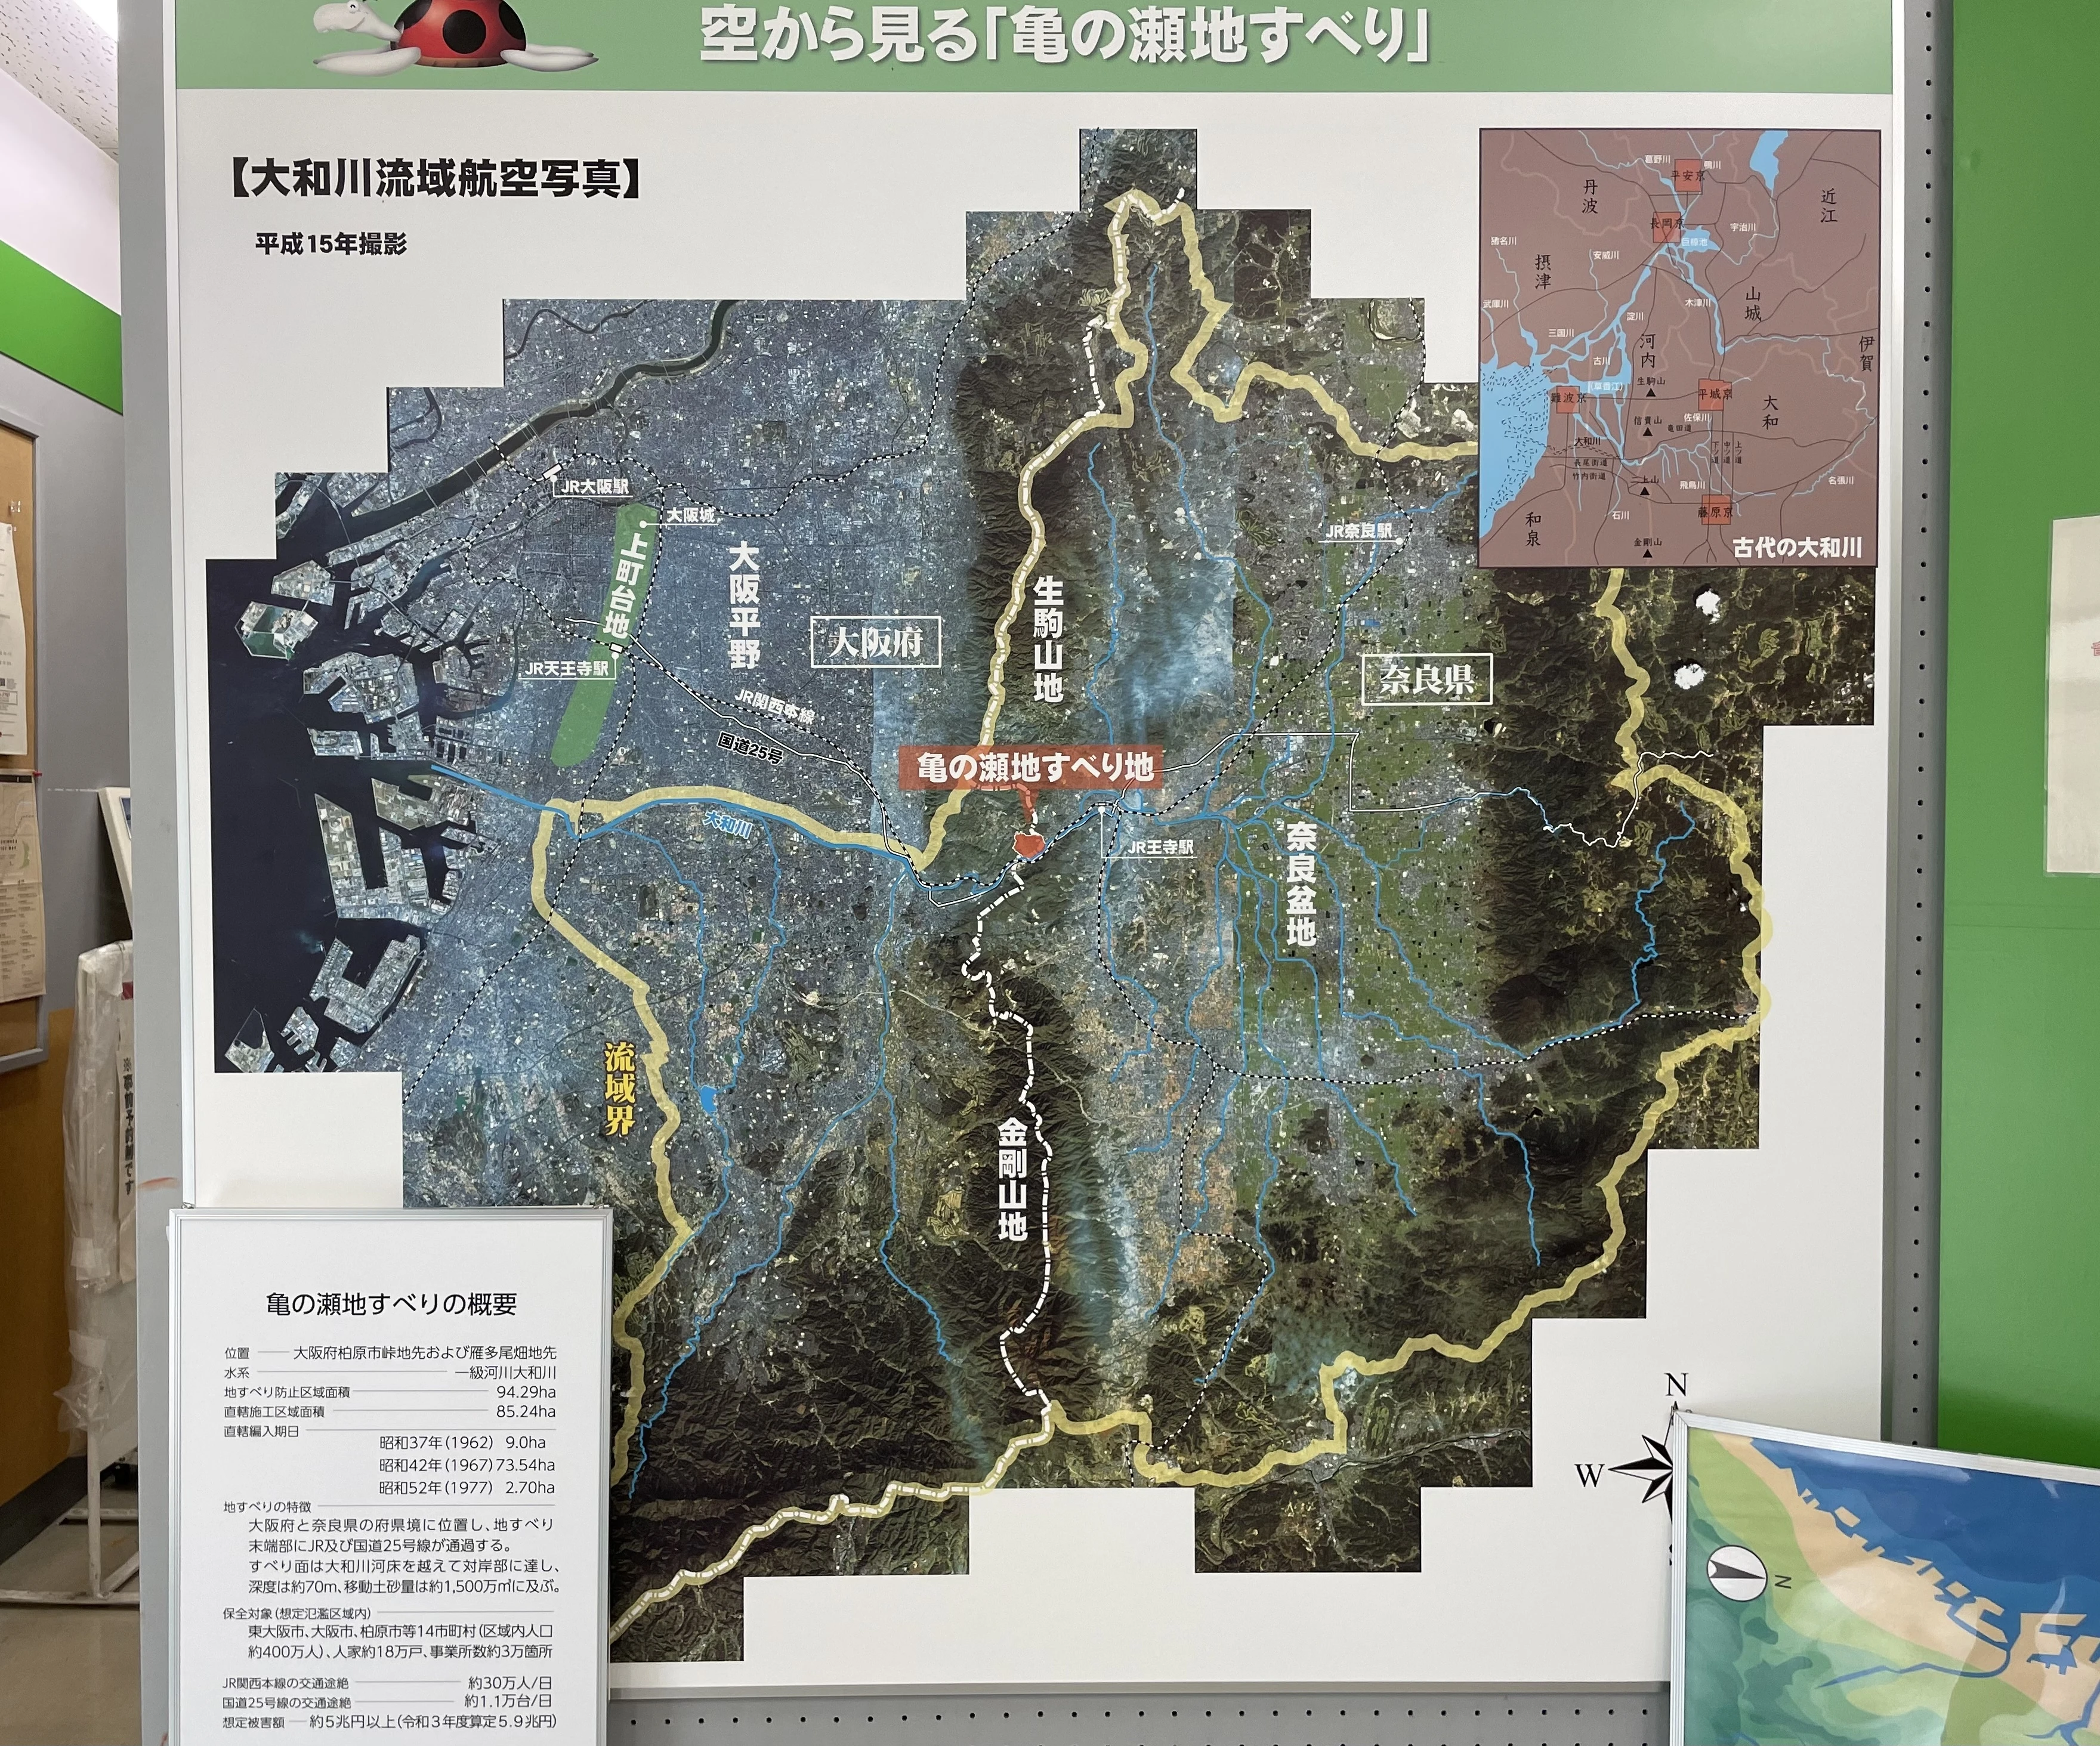 亀の瀬地区 地すべりマップ